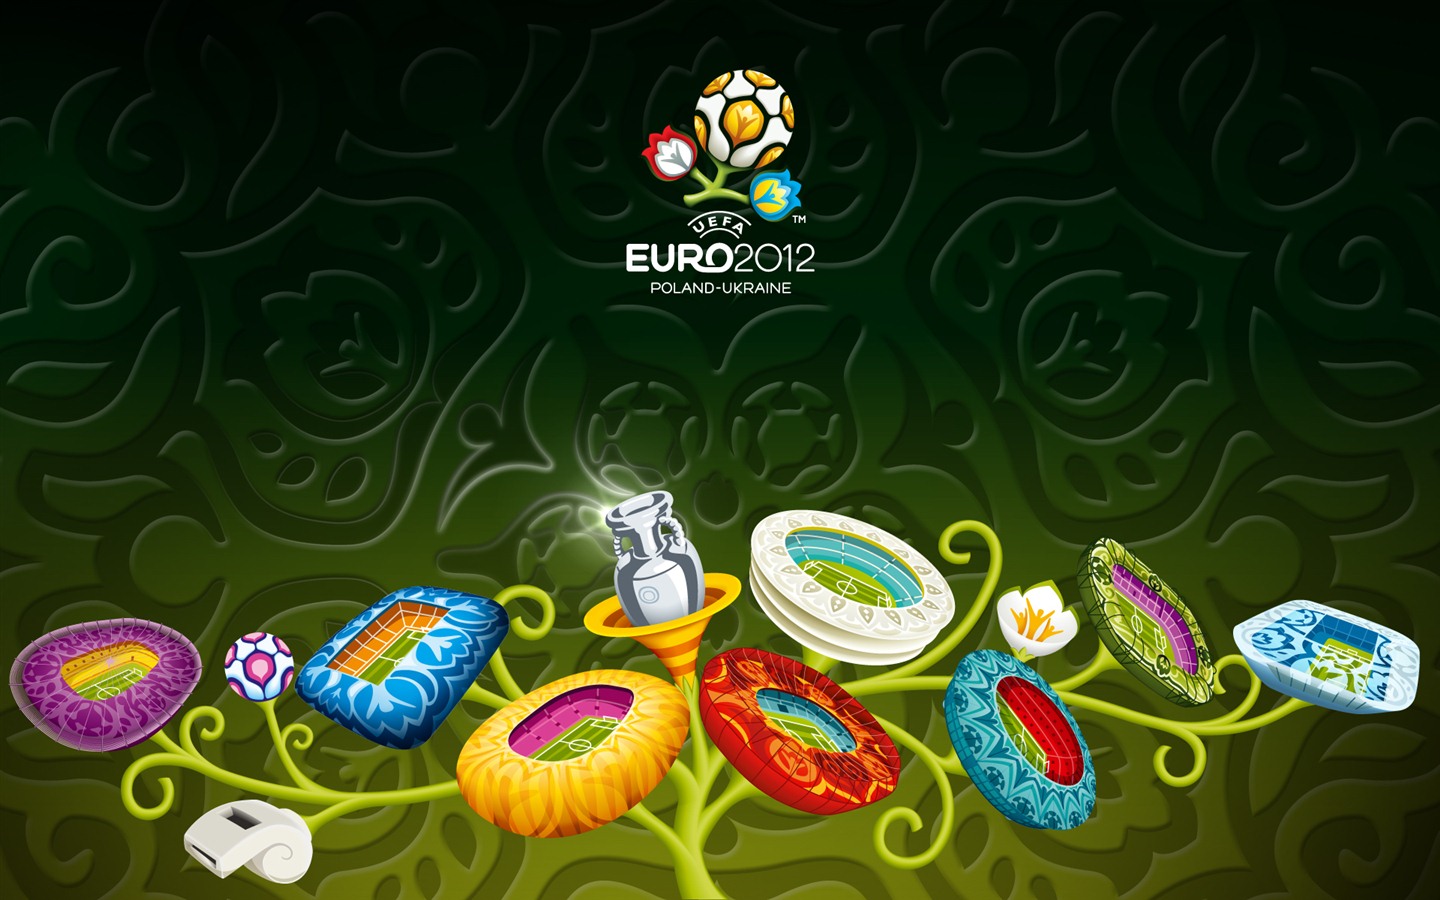 UEFA EURO 2012 欧洲足球锦标赛 高清壁纸(二)11 - 1440x900